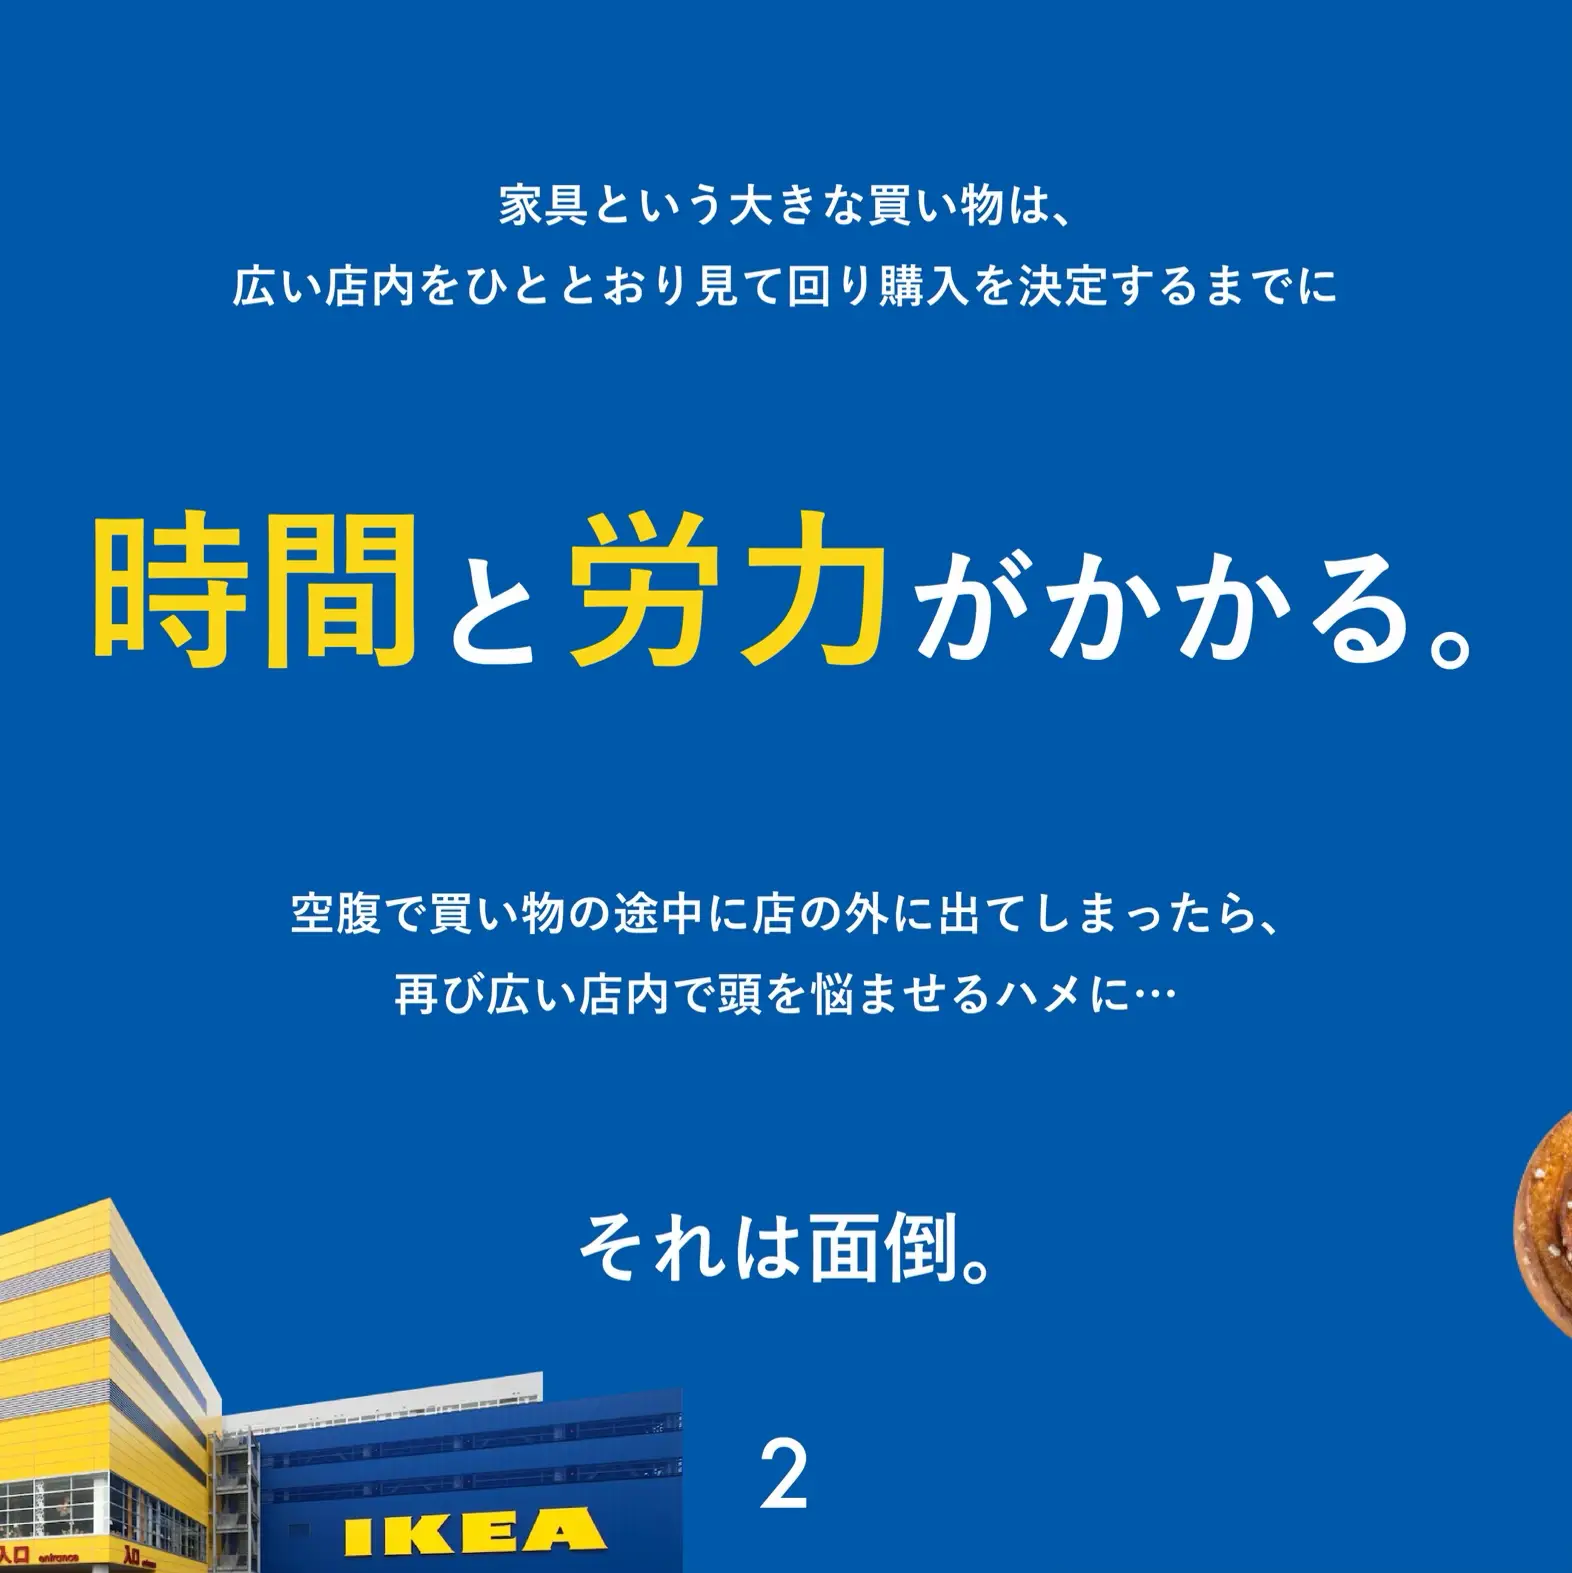 IKEA Scan & Pay  IKEA Japan - IKEA